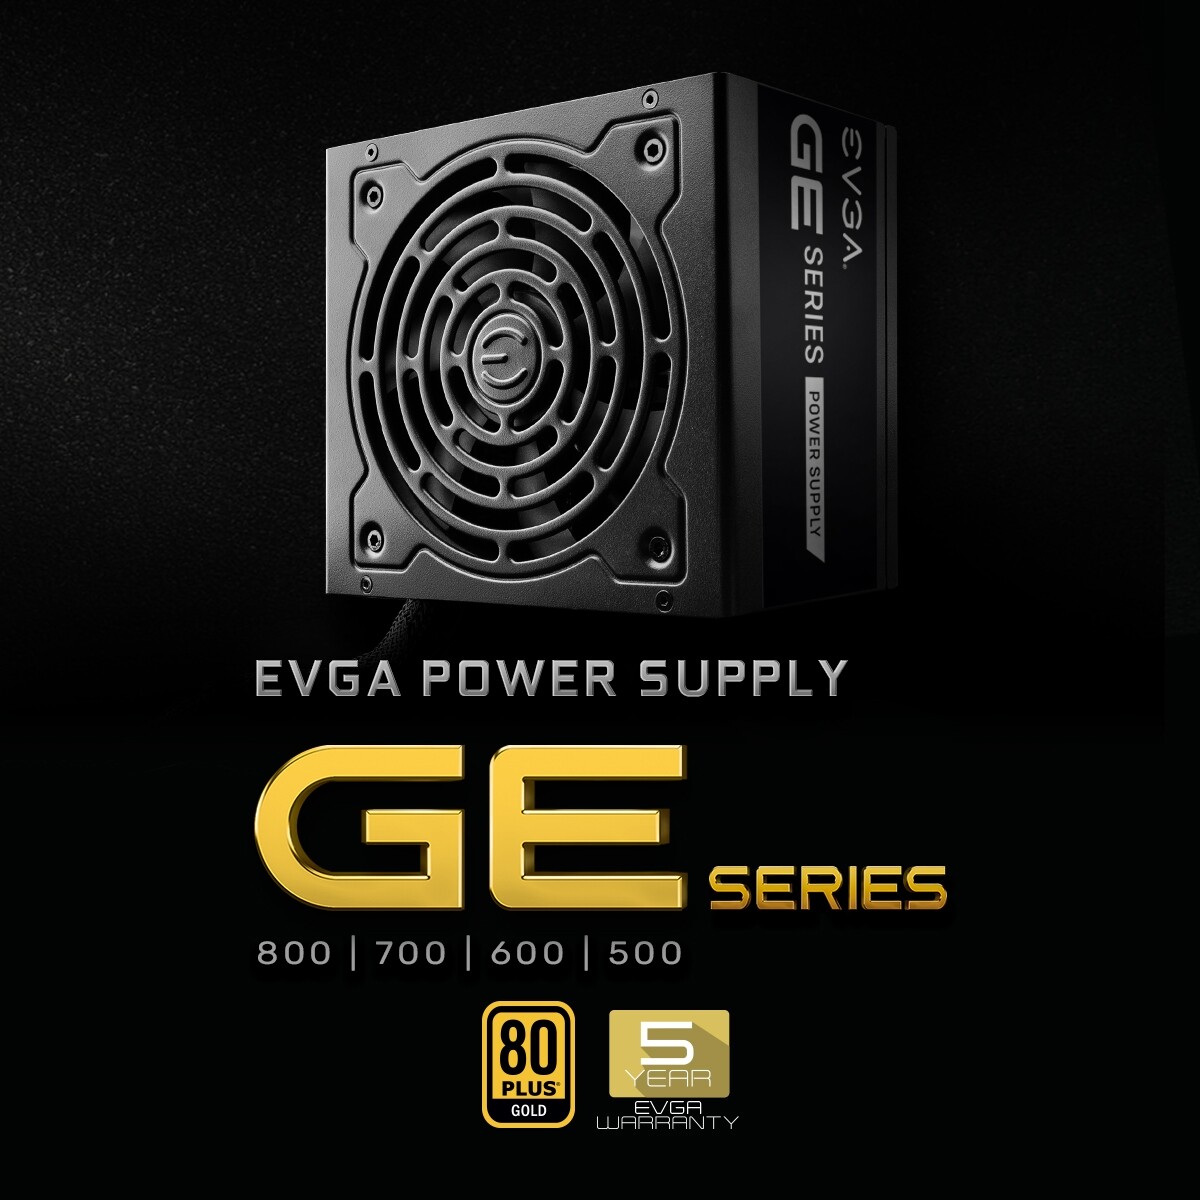 EVGA anuncia las nuevas fuentes de poder GE